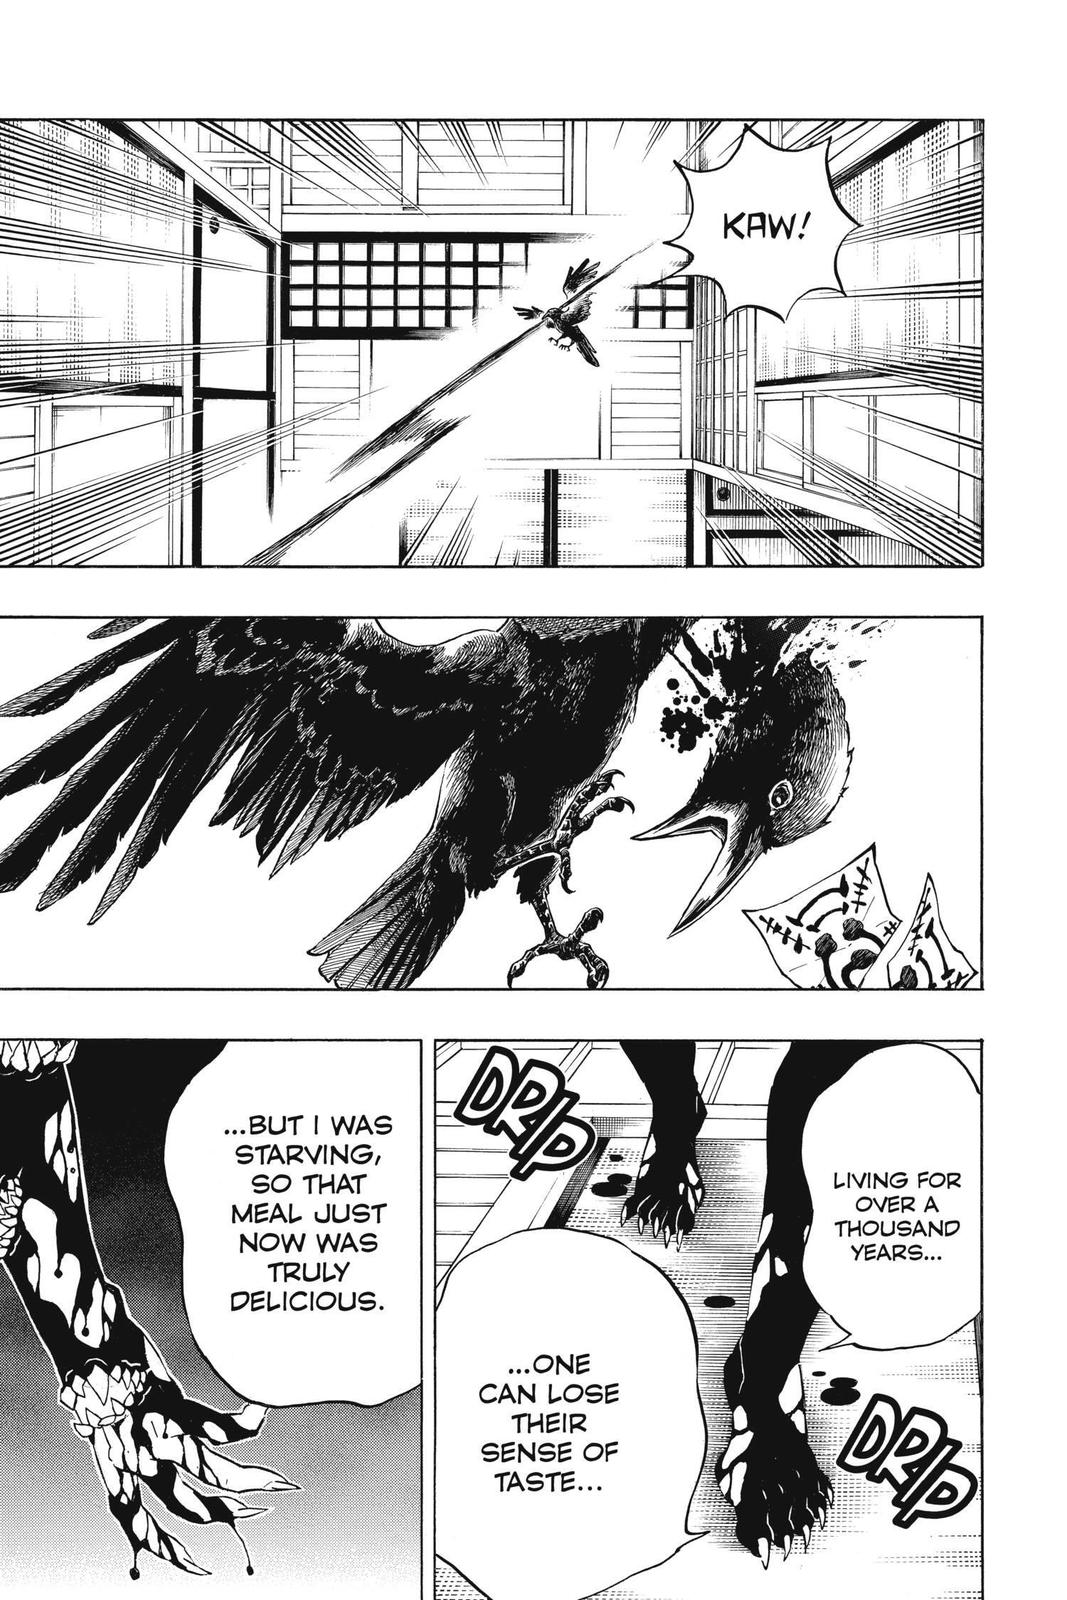 Demon Slayer Manga Manga Chapter - 180 - image 11